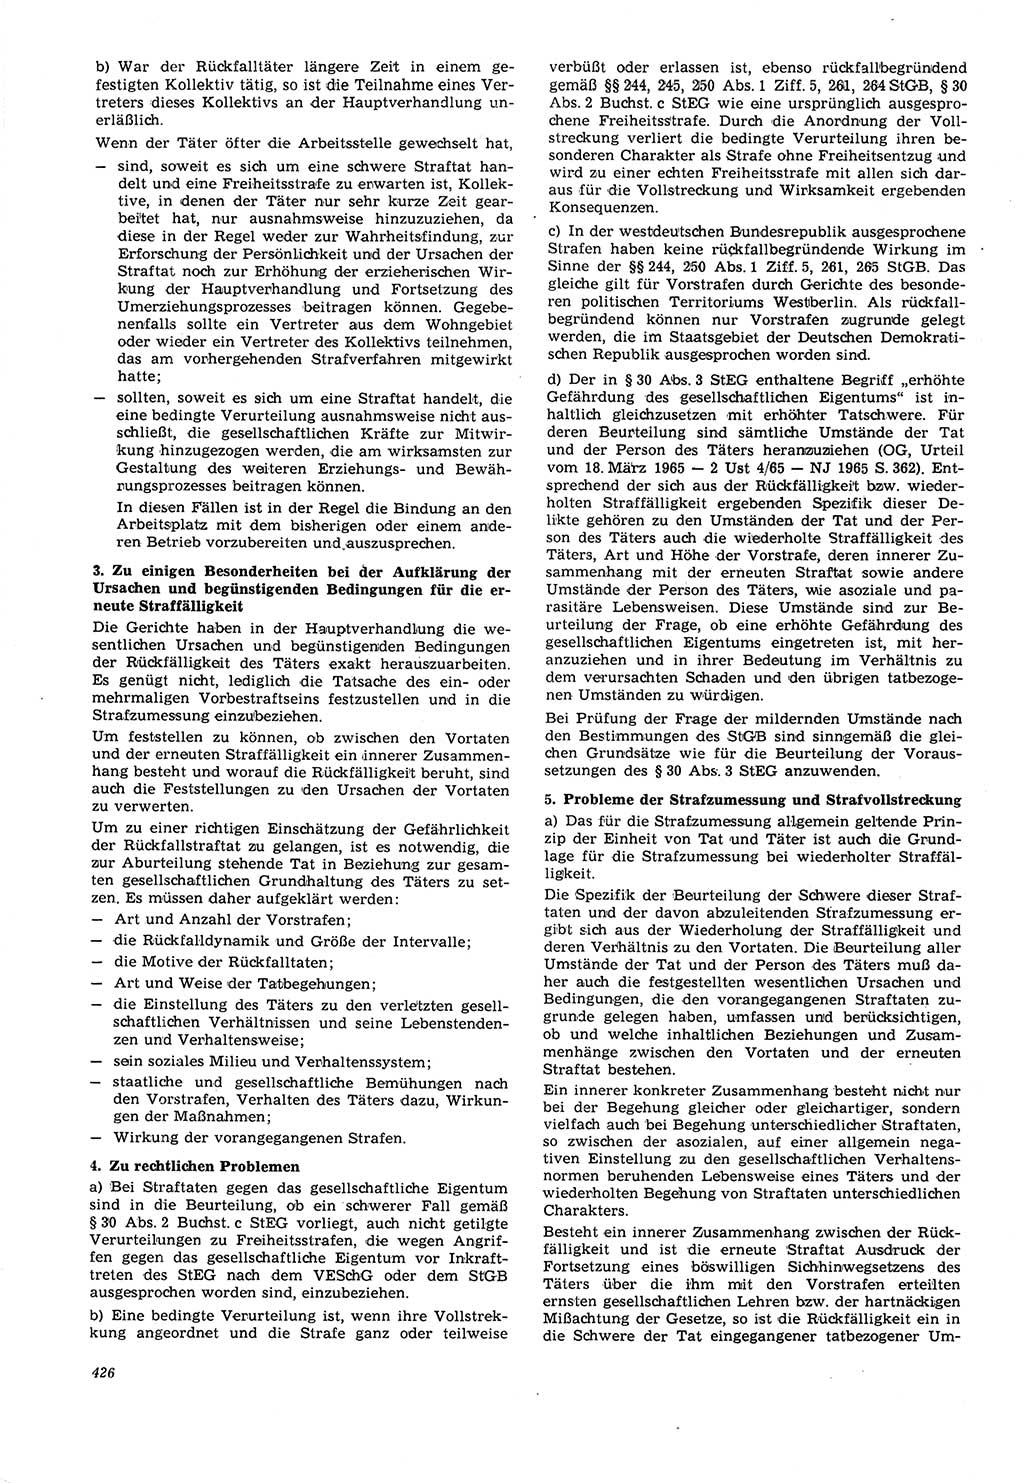 Neue Justiz (NJ), Zeitschrift für Recht und Rechtswissenschaft [Deutsche Demokratische Republik (DDR)], 21. Jahrgang 1967, Seite 426 (NJ DDR 1967, S. 426)